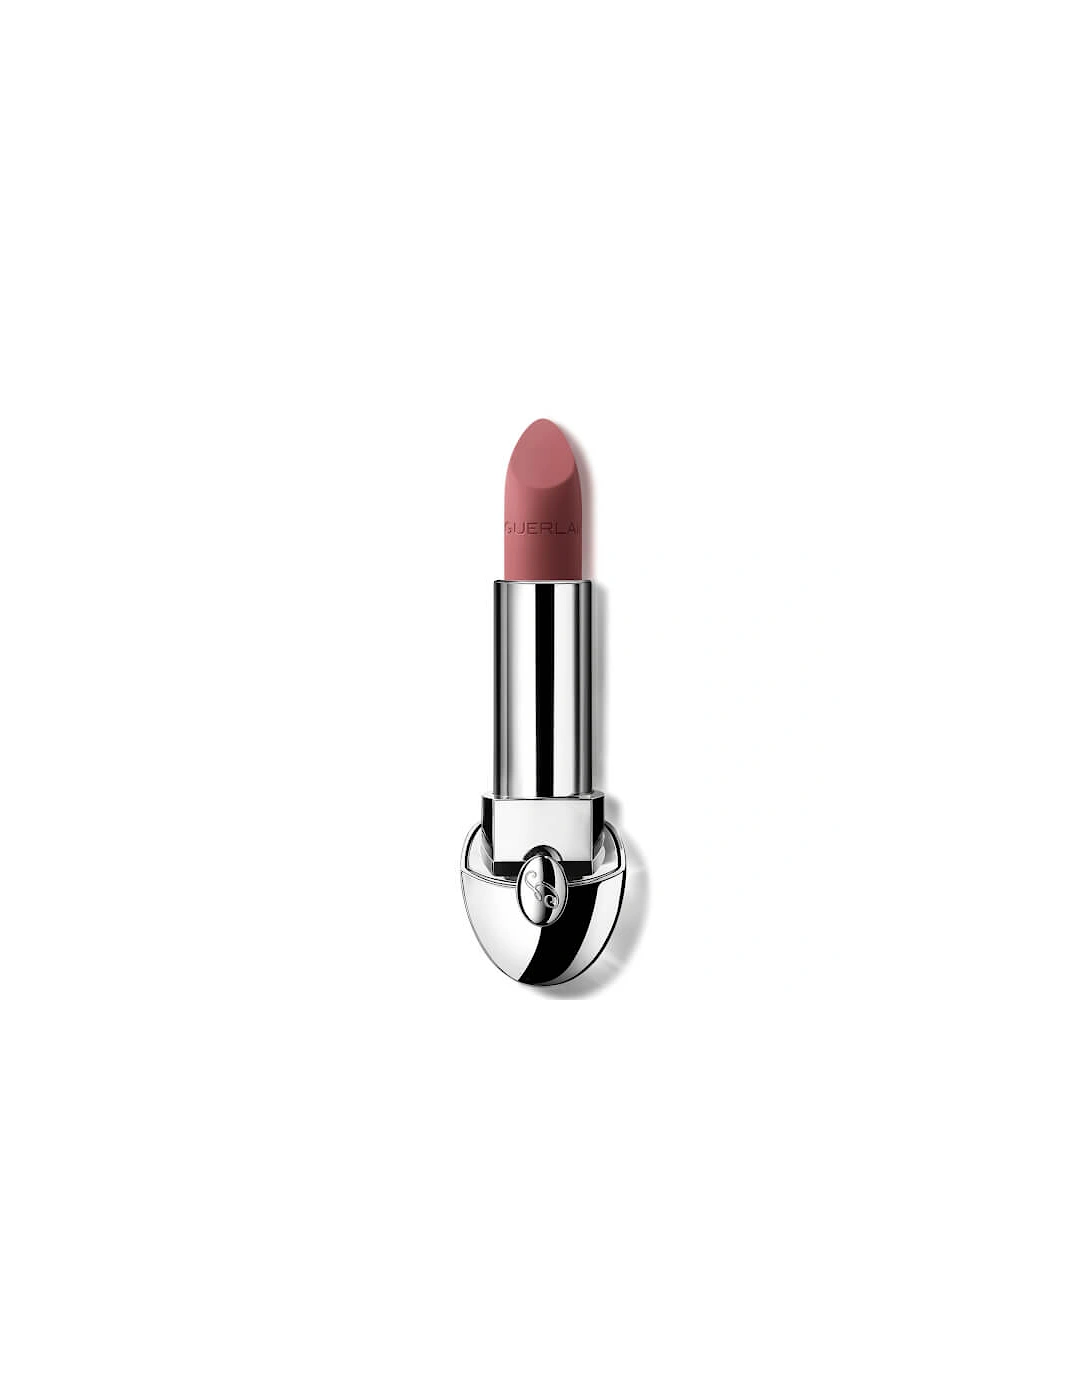 Rouge G Luxurious Velvet 16 Hour Wear High-Pigmentation Velvet Matte Lipstick - 520 Mauve Plum, 2 of 1